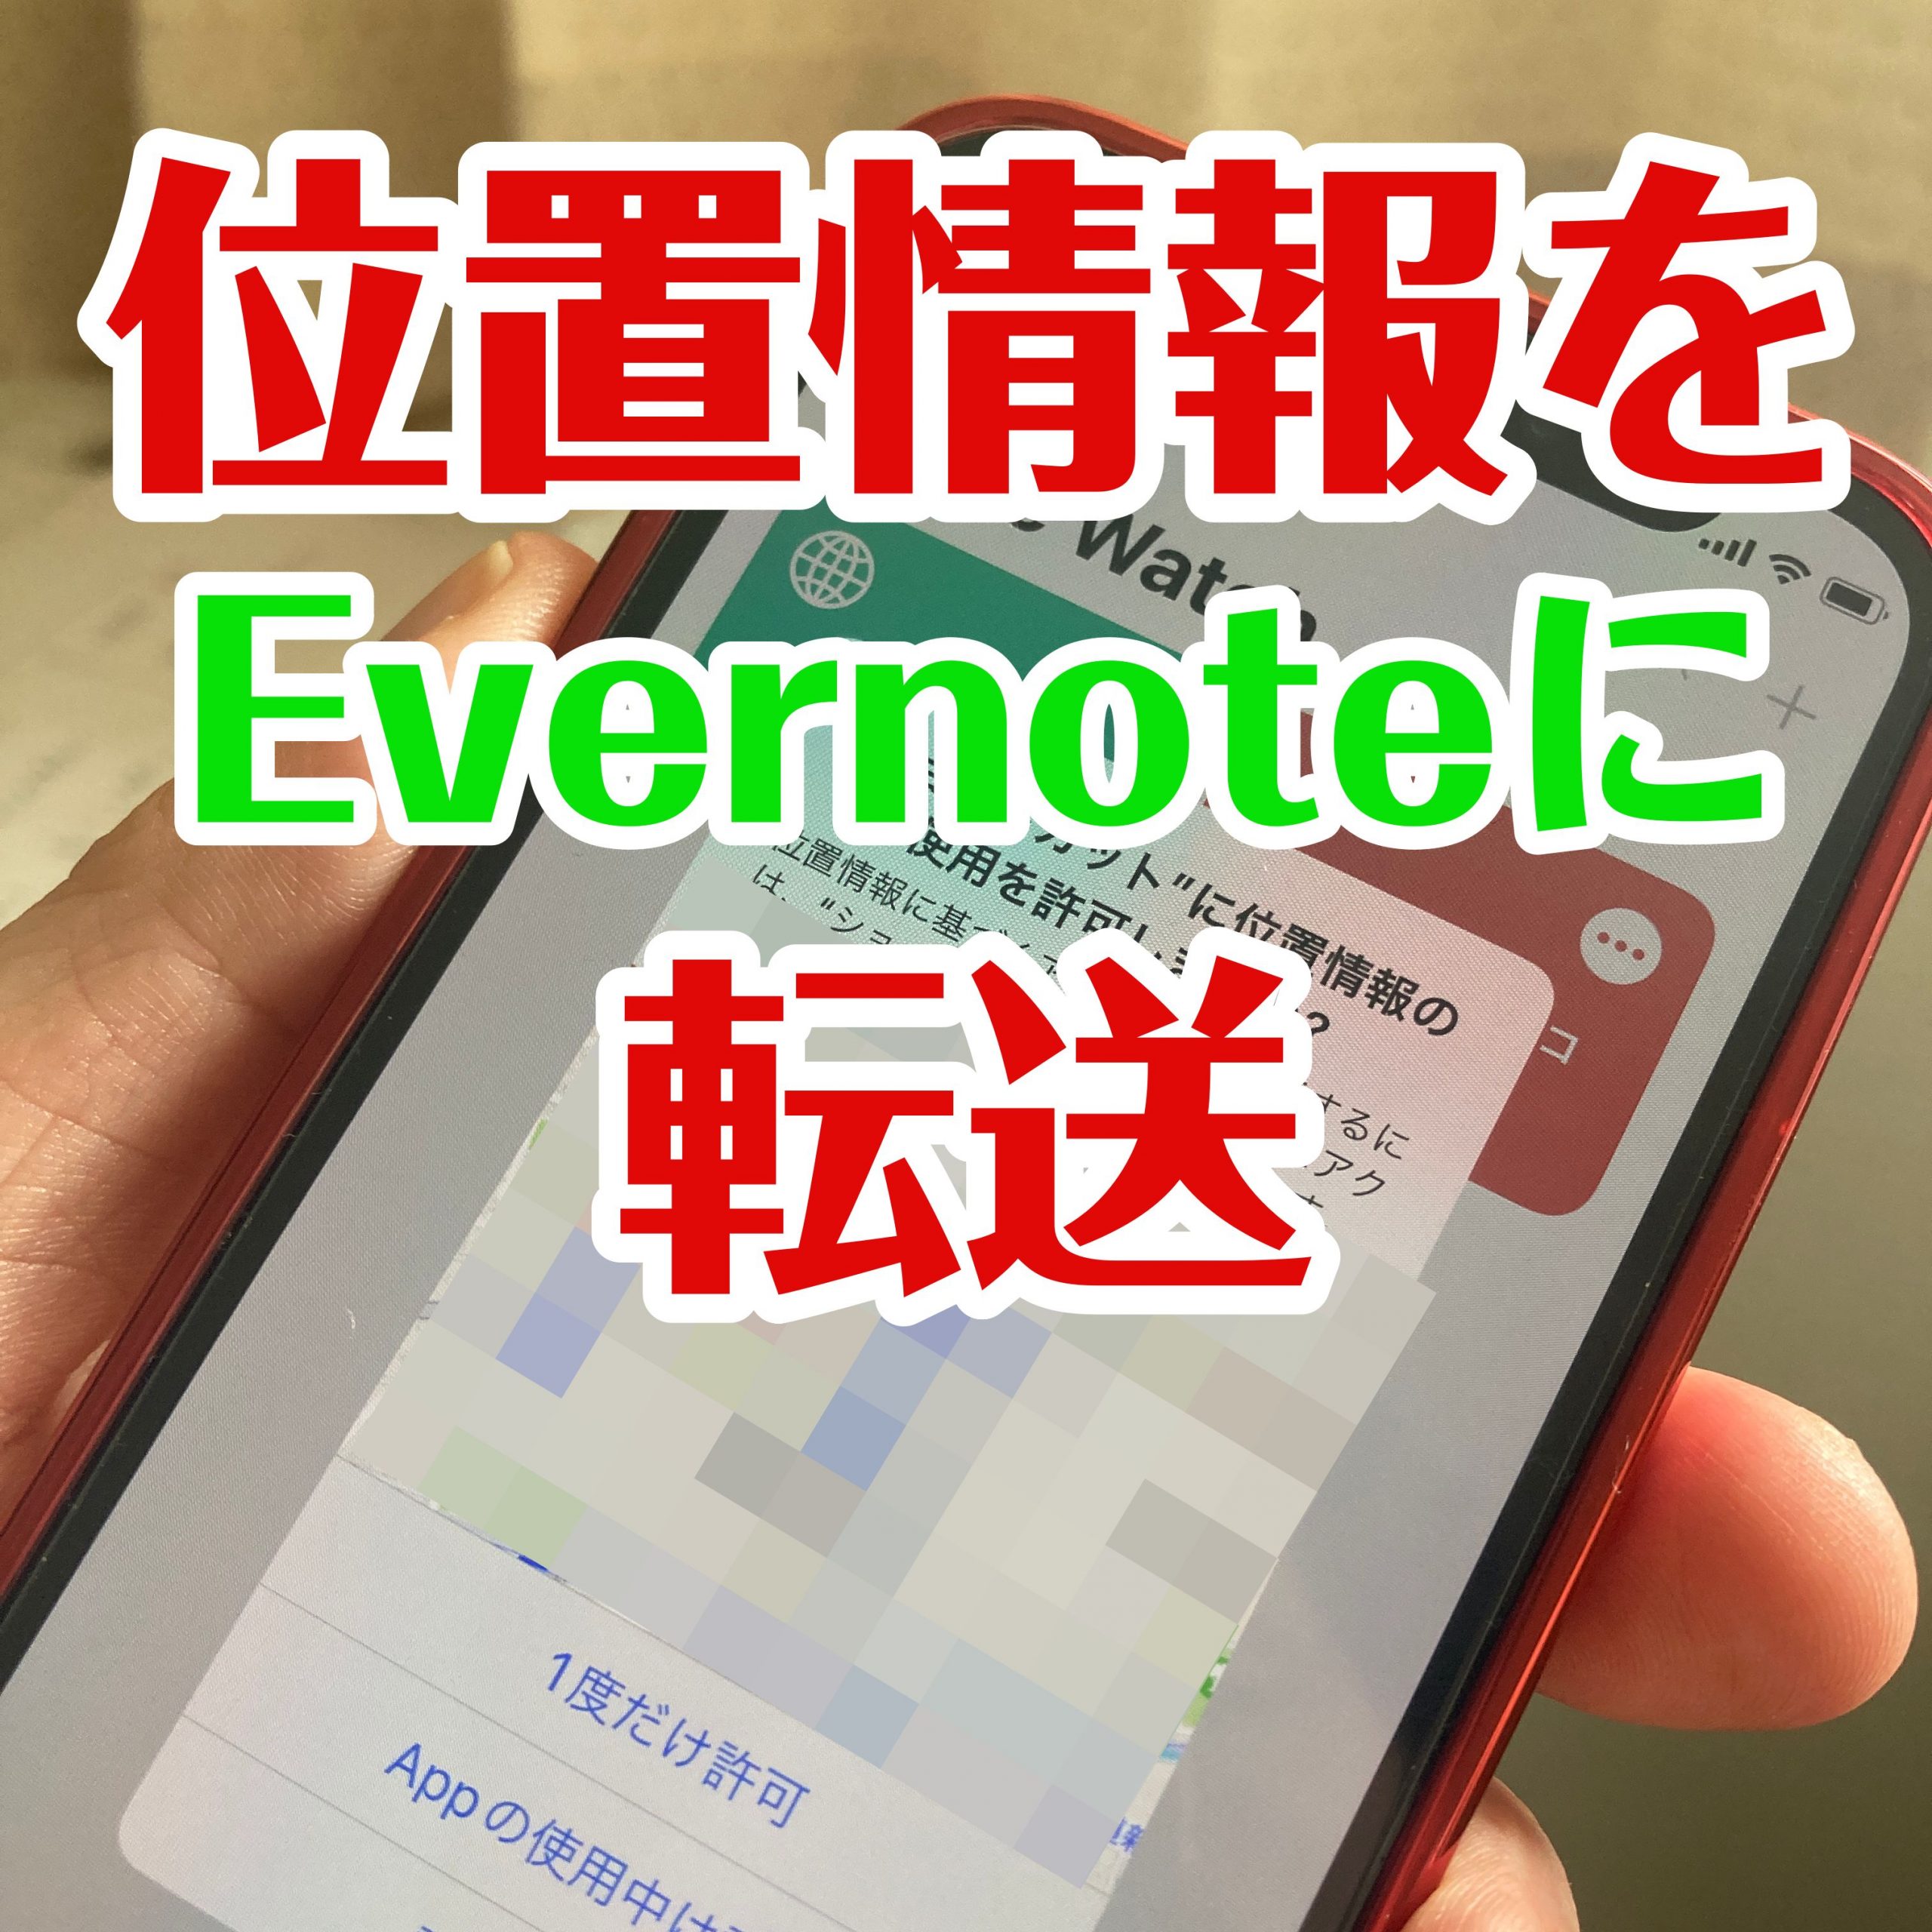 Tips iOS15 ショートカット Evernoteに位置情報を転送